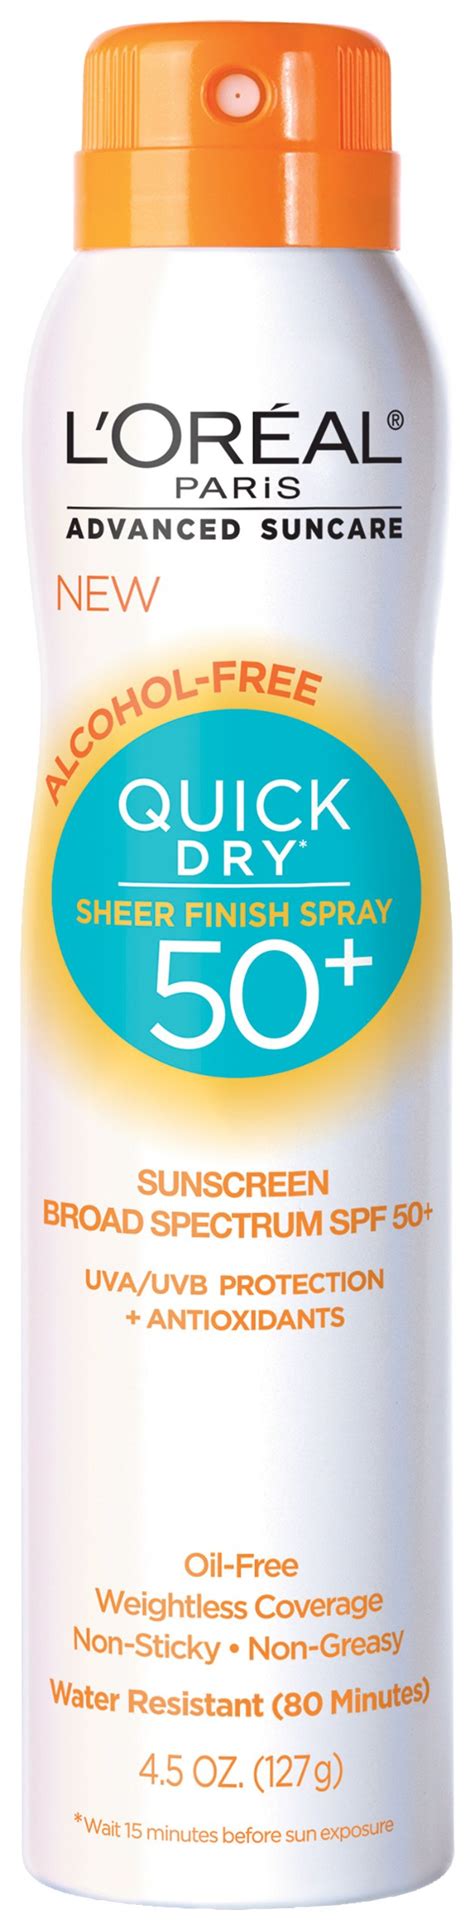 L'Oreal Paris Skin Care Quick Dry Sunscreen Spray logo